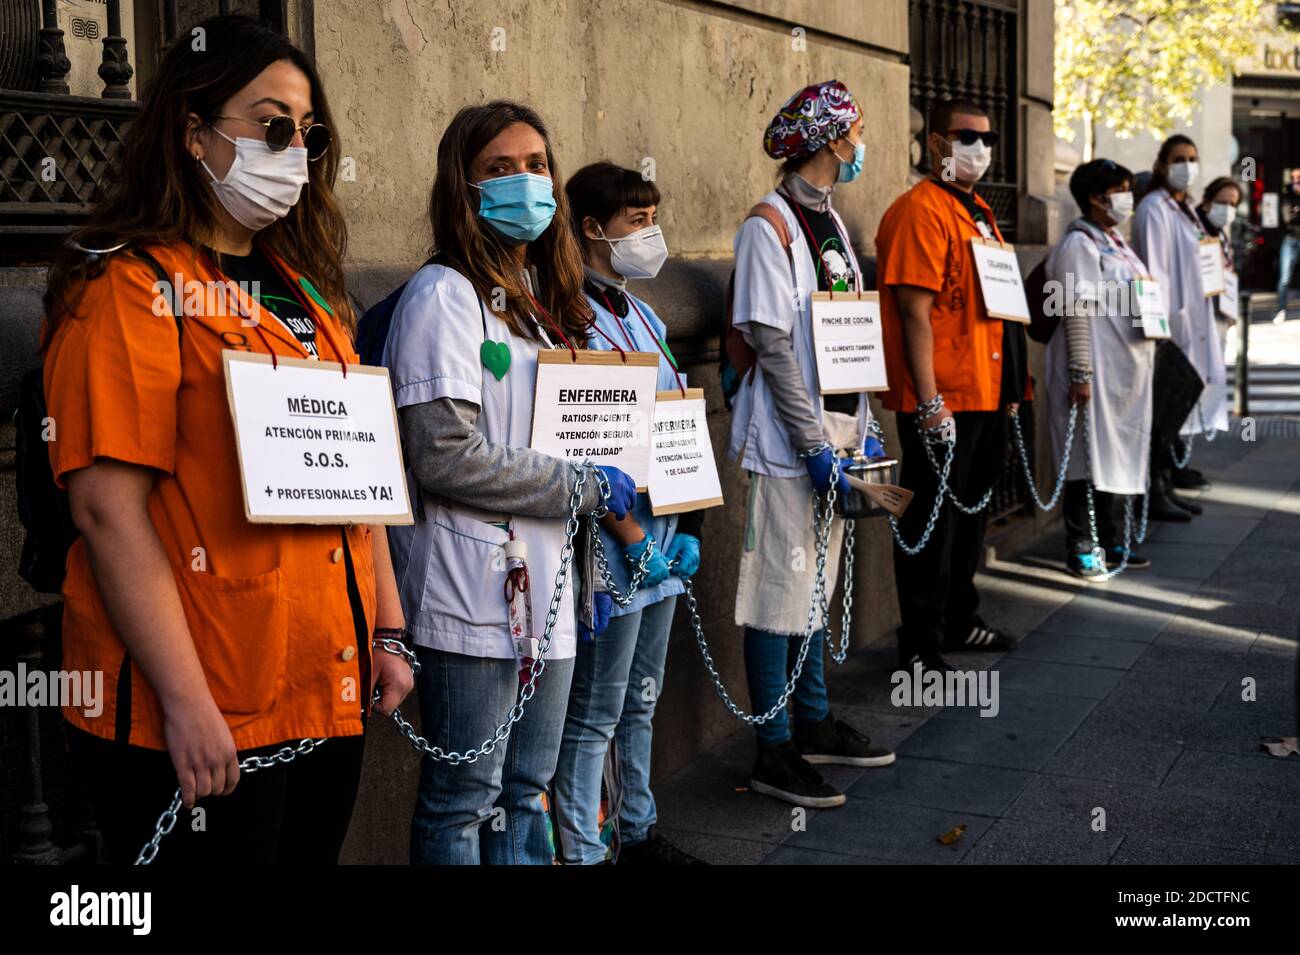 Madrid, Spanien. November 2020. Vertreter der Krankenhausdienste ketteten sich um das Gesundheitsamt, um zu protestieren und bessere Arbeitsbedingungen und die Misshandlung ihres Sektors während der Coronavirus-Pandemie (COVID-19) zu fordern. Quelle: Marcos del Mazo/Alamy Live News Stockfoto